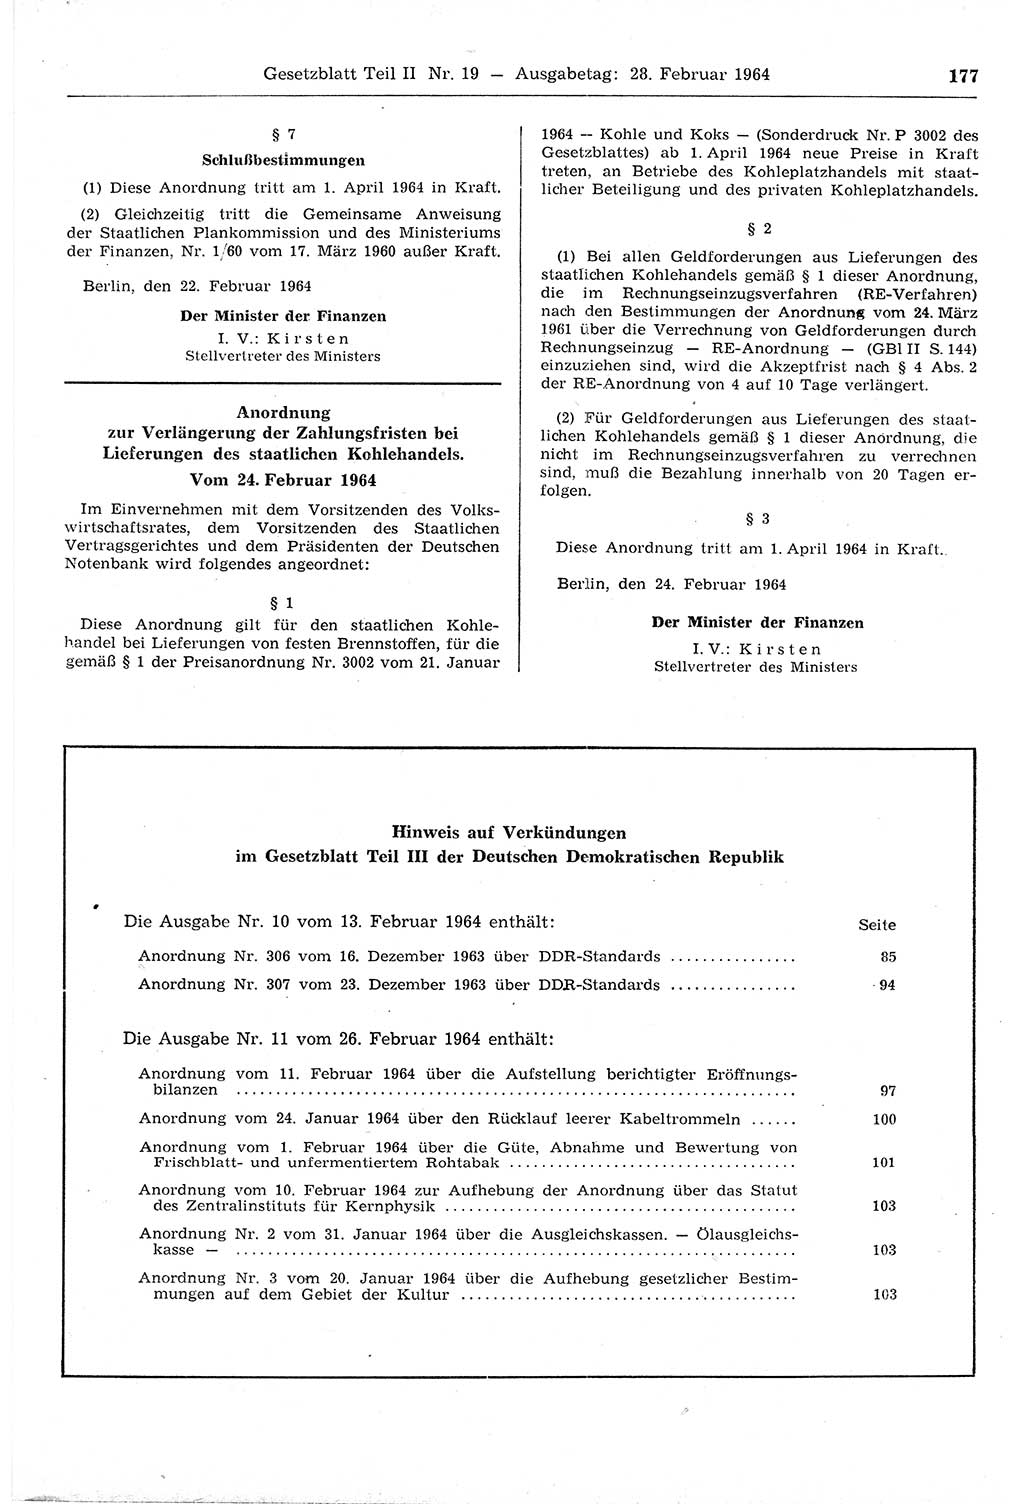 Gesetzblatt (GBl.) der Deutschen Demokratischen Republik (DDR) Teil ⅠⅠ 1964, Seite 177 (GBl. DDR ⅠⅠ 1964, S. 177)